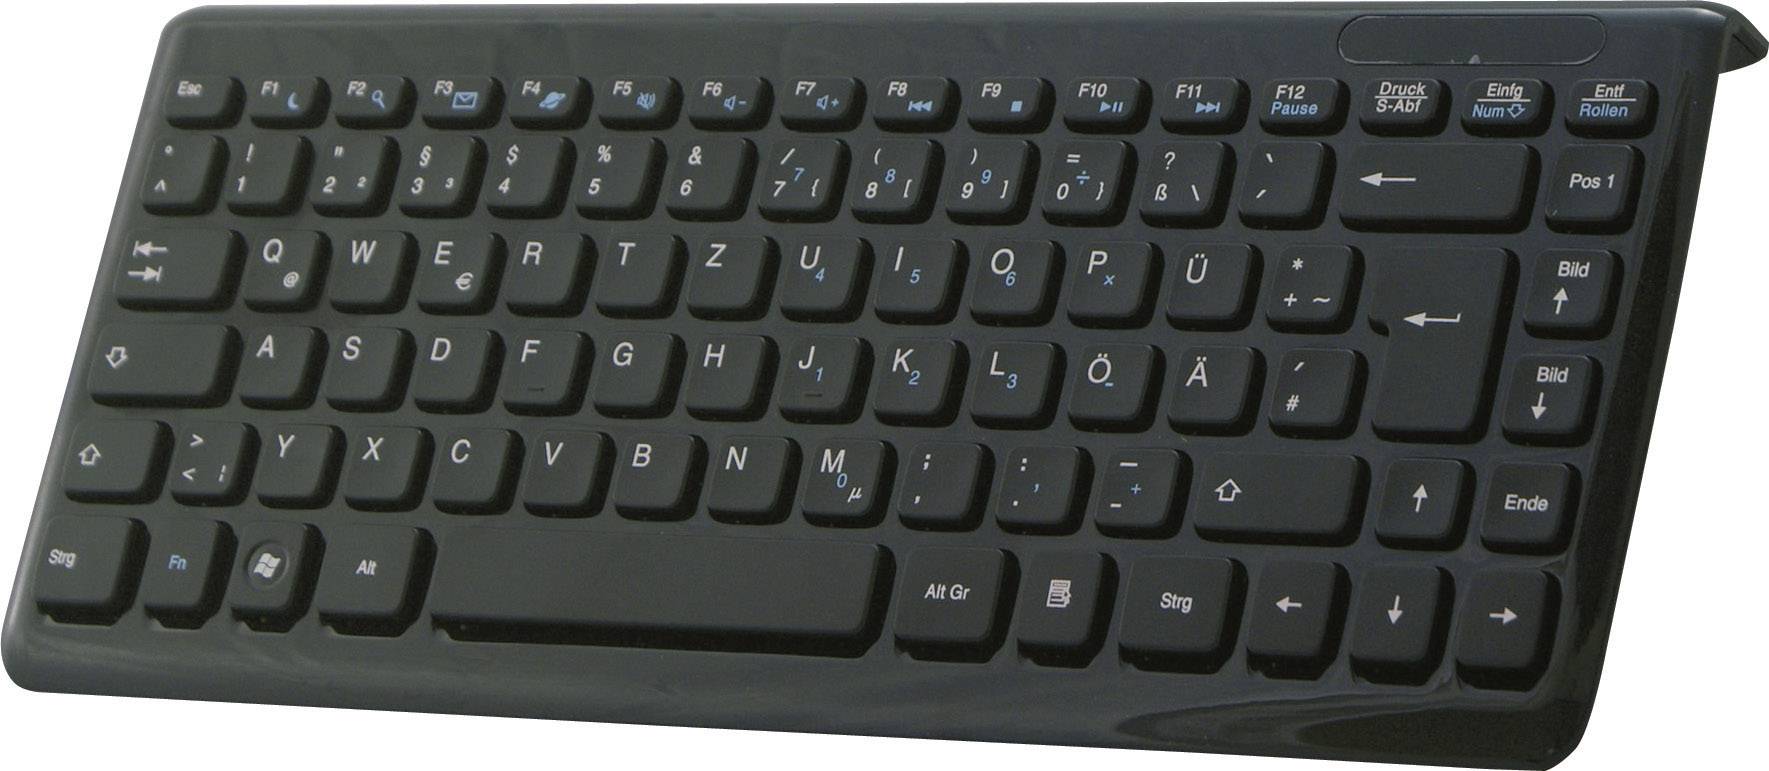 PERIXX Periboard-407 USB-Tastatur Schwarz